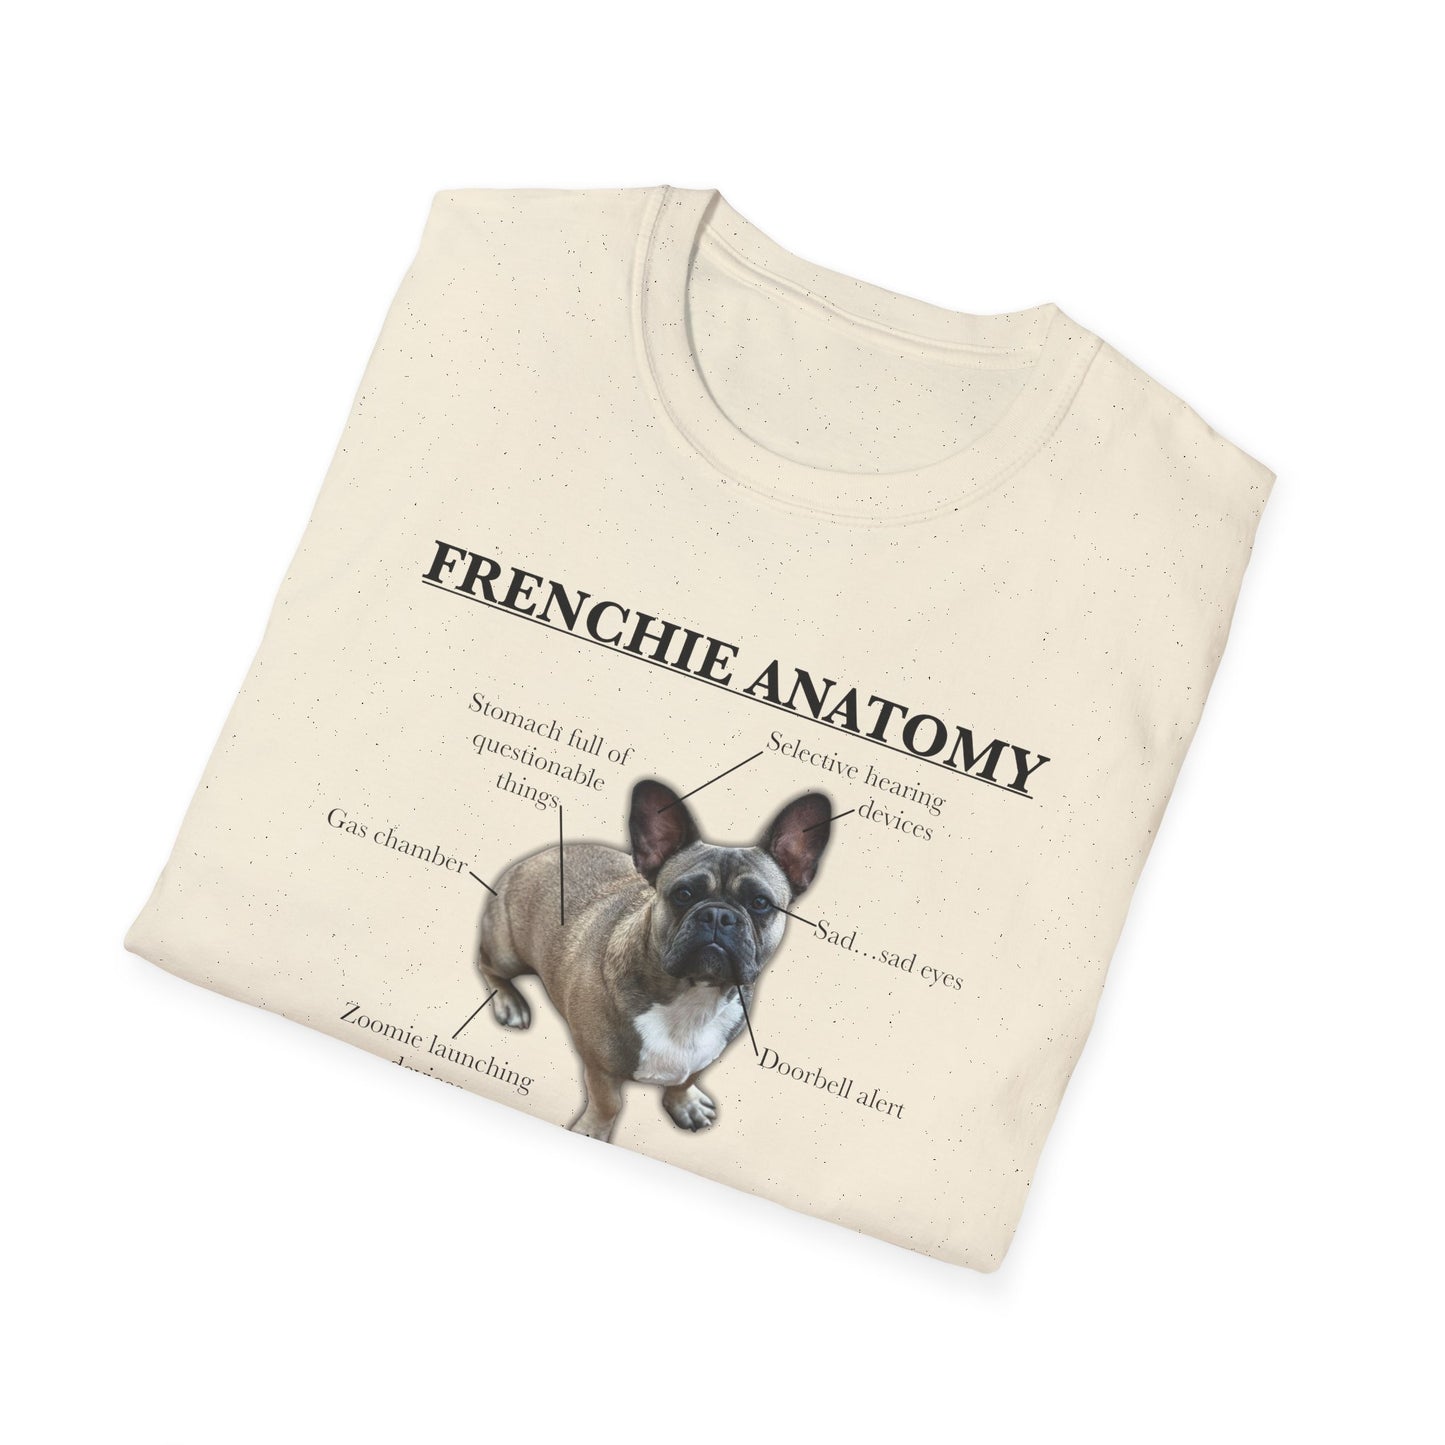 Frenchie Anatomy Shirt